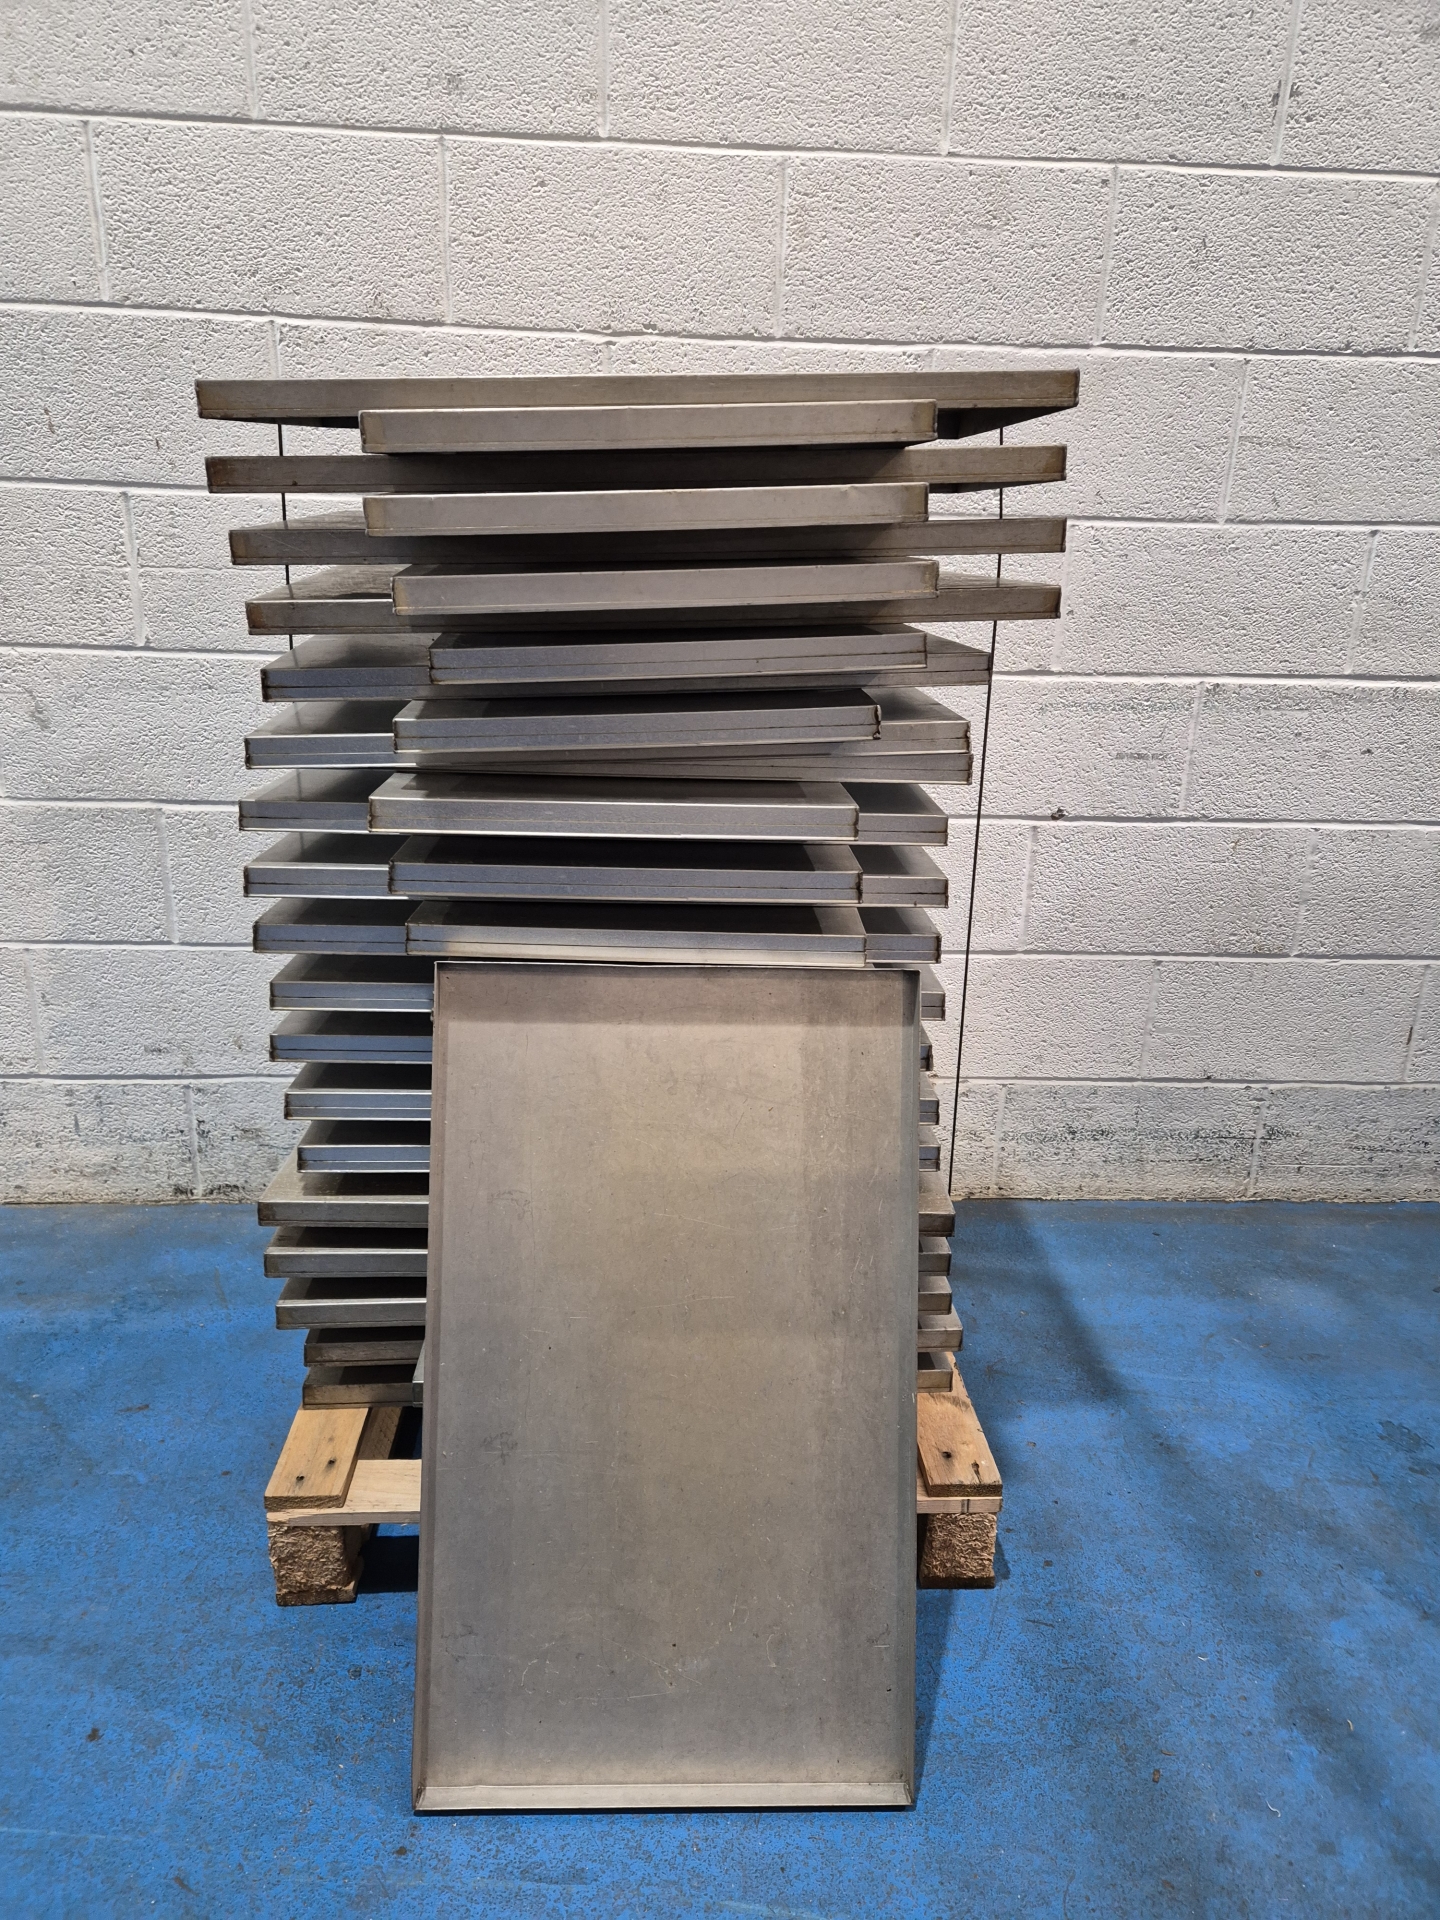 17.5" x 27" 4 Sided Aluminium Trays